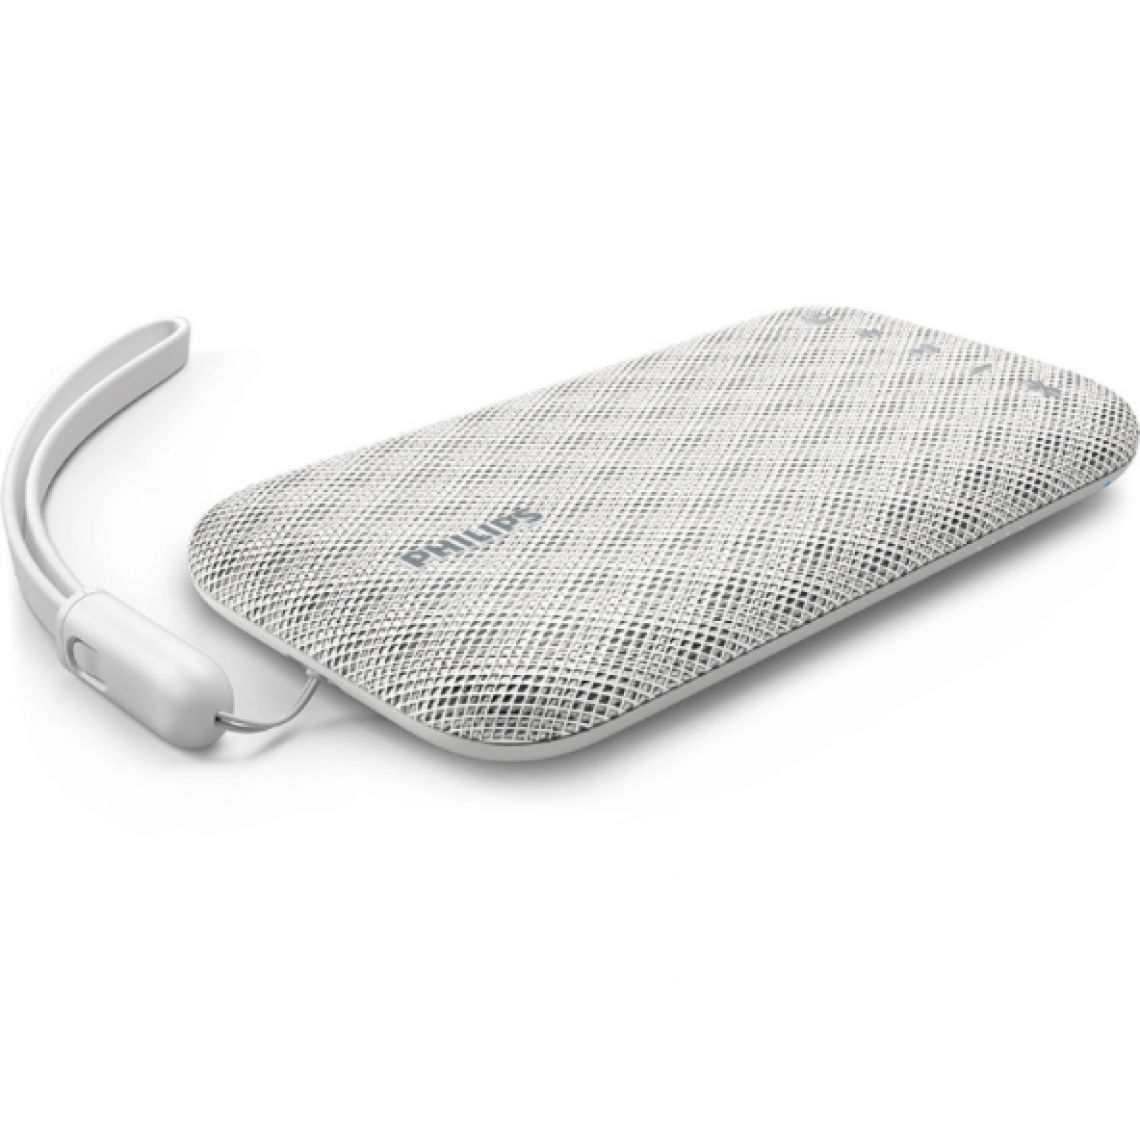 Chrono - Le haut-parleur Bluetooth sans fil Philips BT3900W est étanche et antichoc, avec sangle USB, microphone, fort et design(Noir) - Enceinte PC